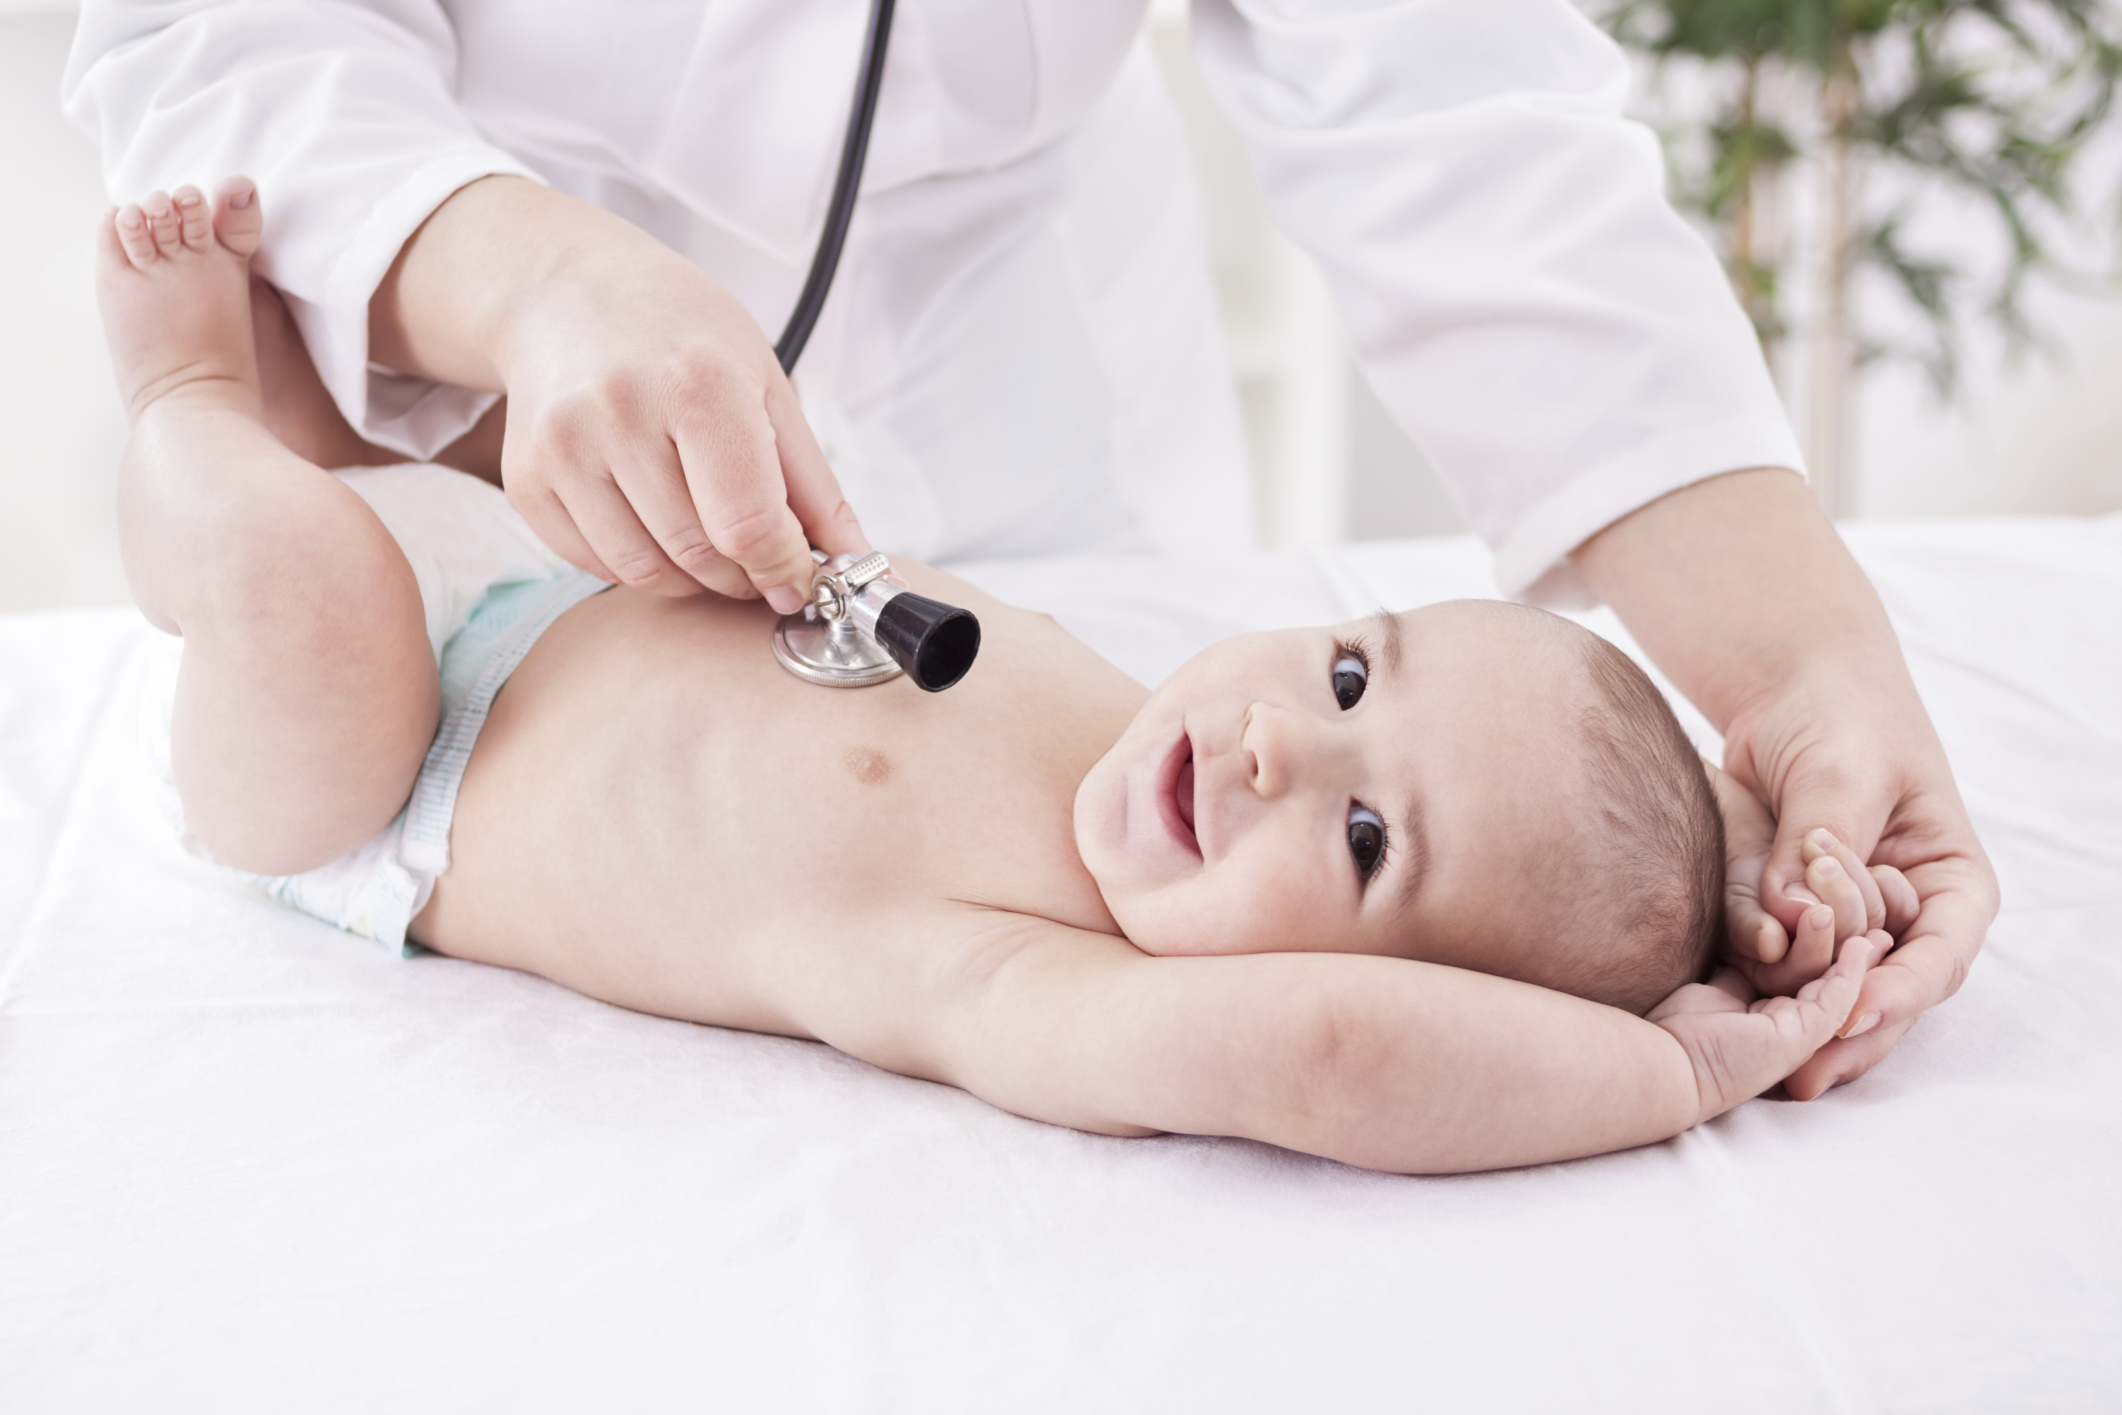 Neugeborenen-Screening für seltene Immundefekte